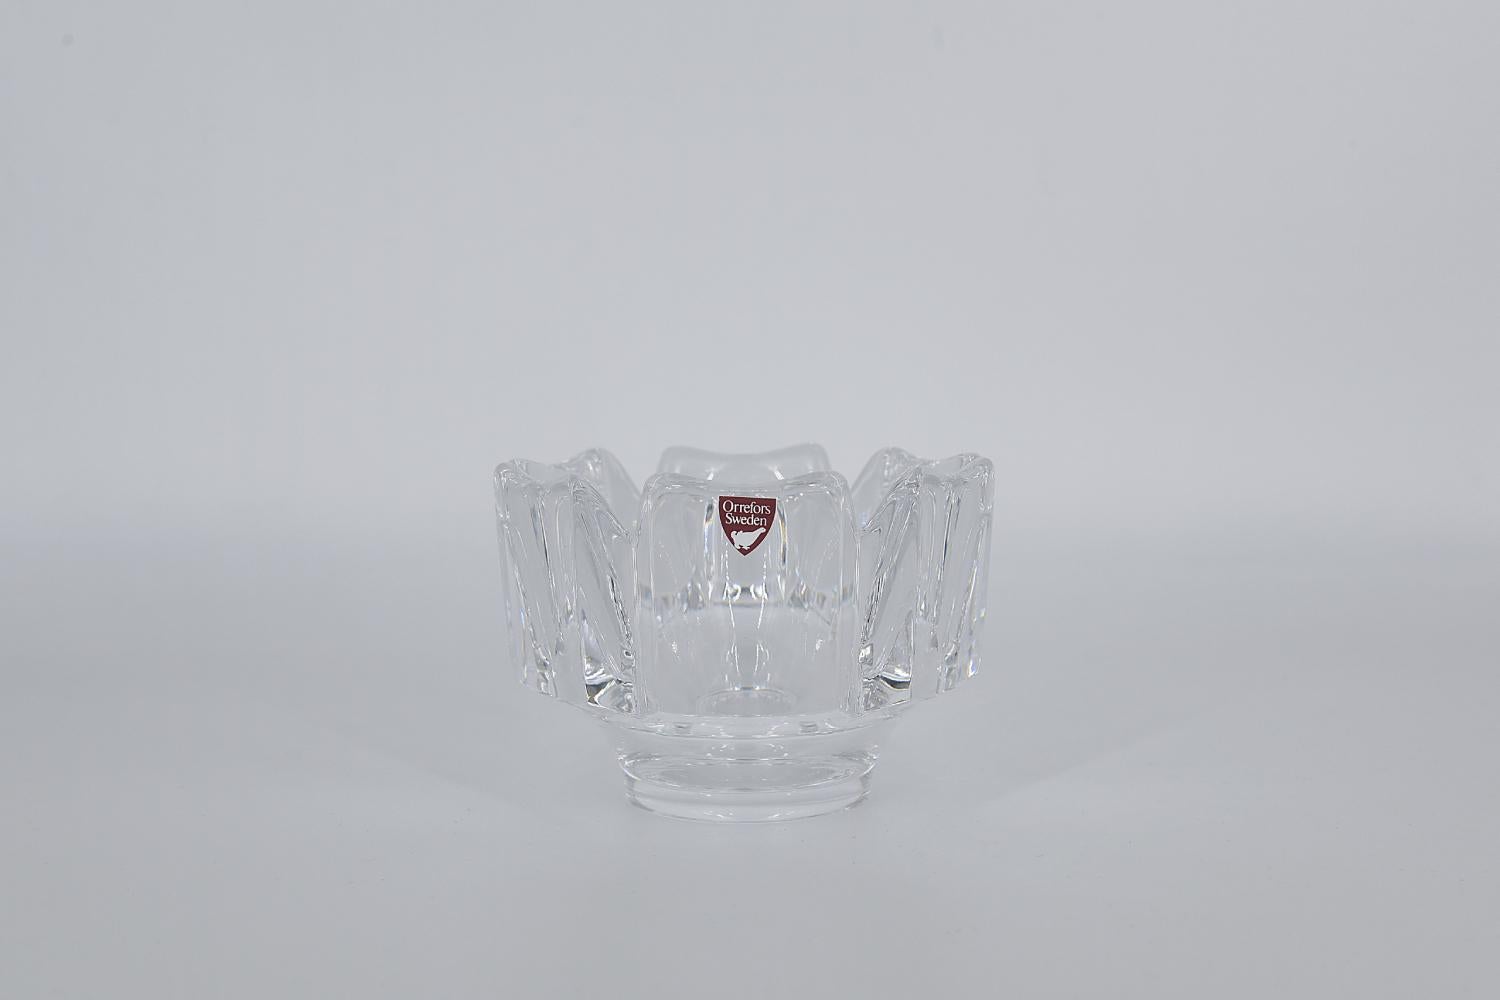 Diese Corona-Schale aus Kristall wurde in den 1970er Jahren von Lars Hellsten für die schwedische Glashütte Orrefors entworfen. Hergestellt aus hochwertigem Kunstkristall in Form einer sechseckigen Krone auf einem runden Sockel.

Lars Hellsten